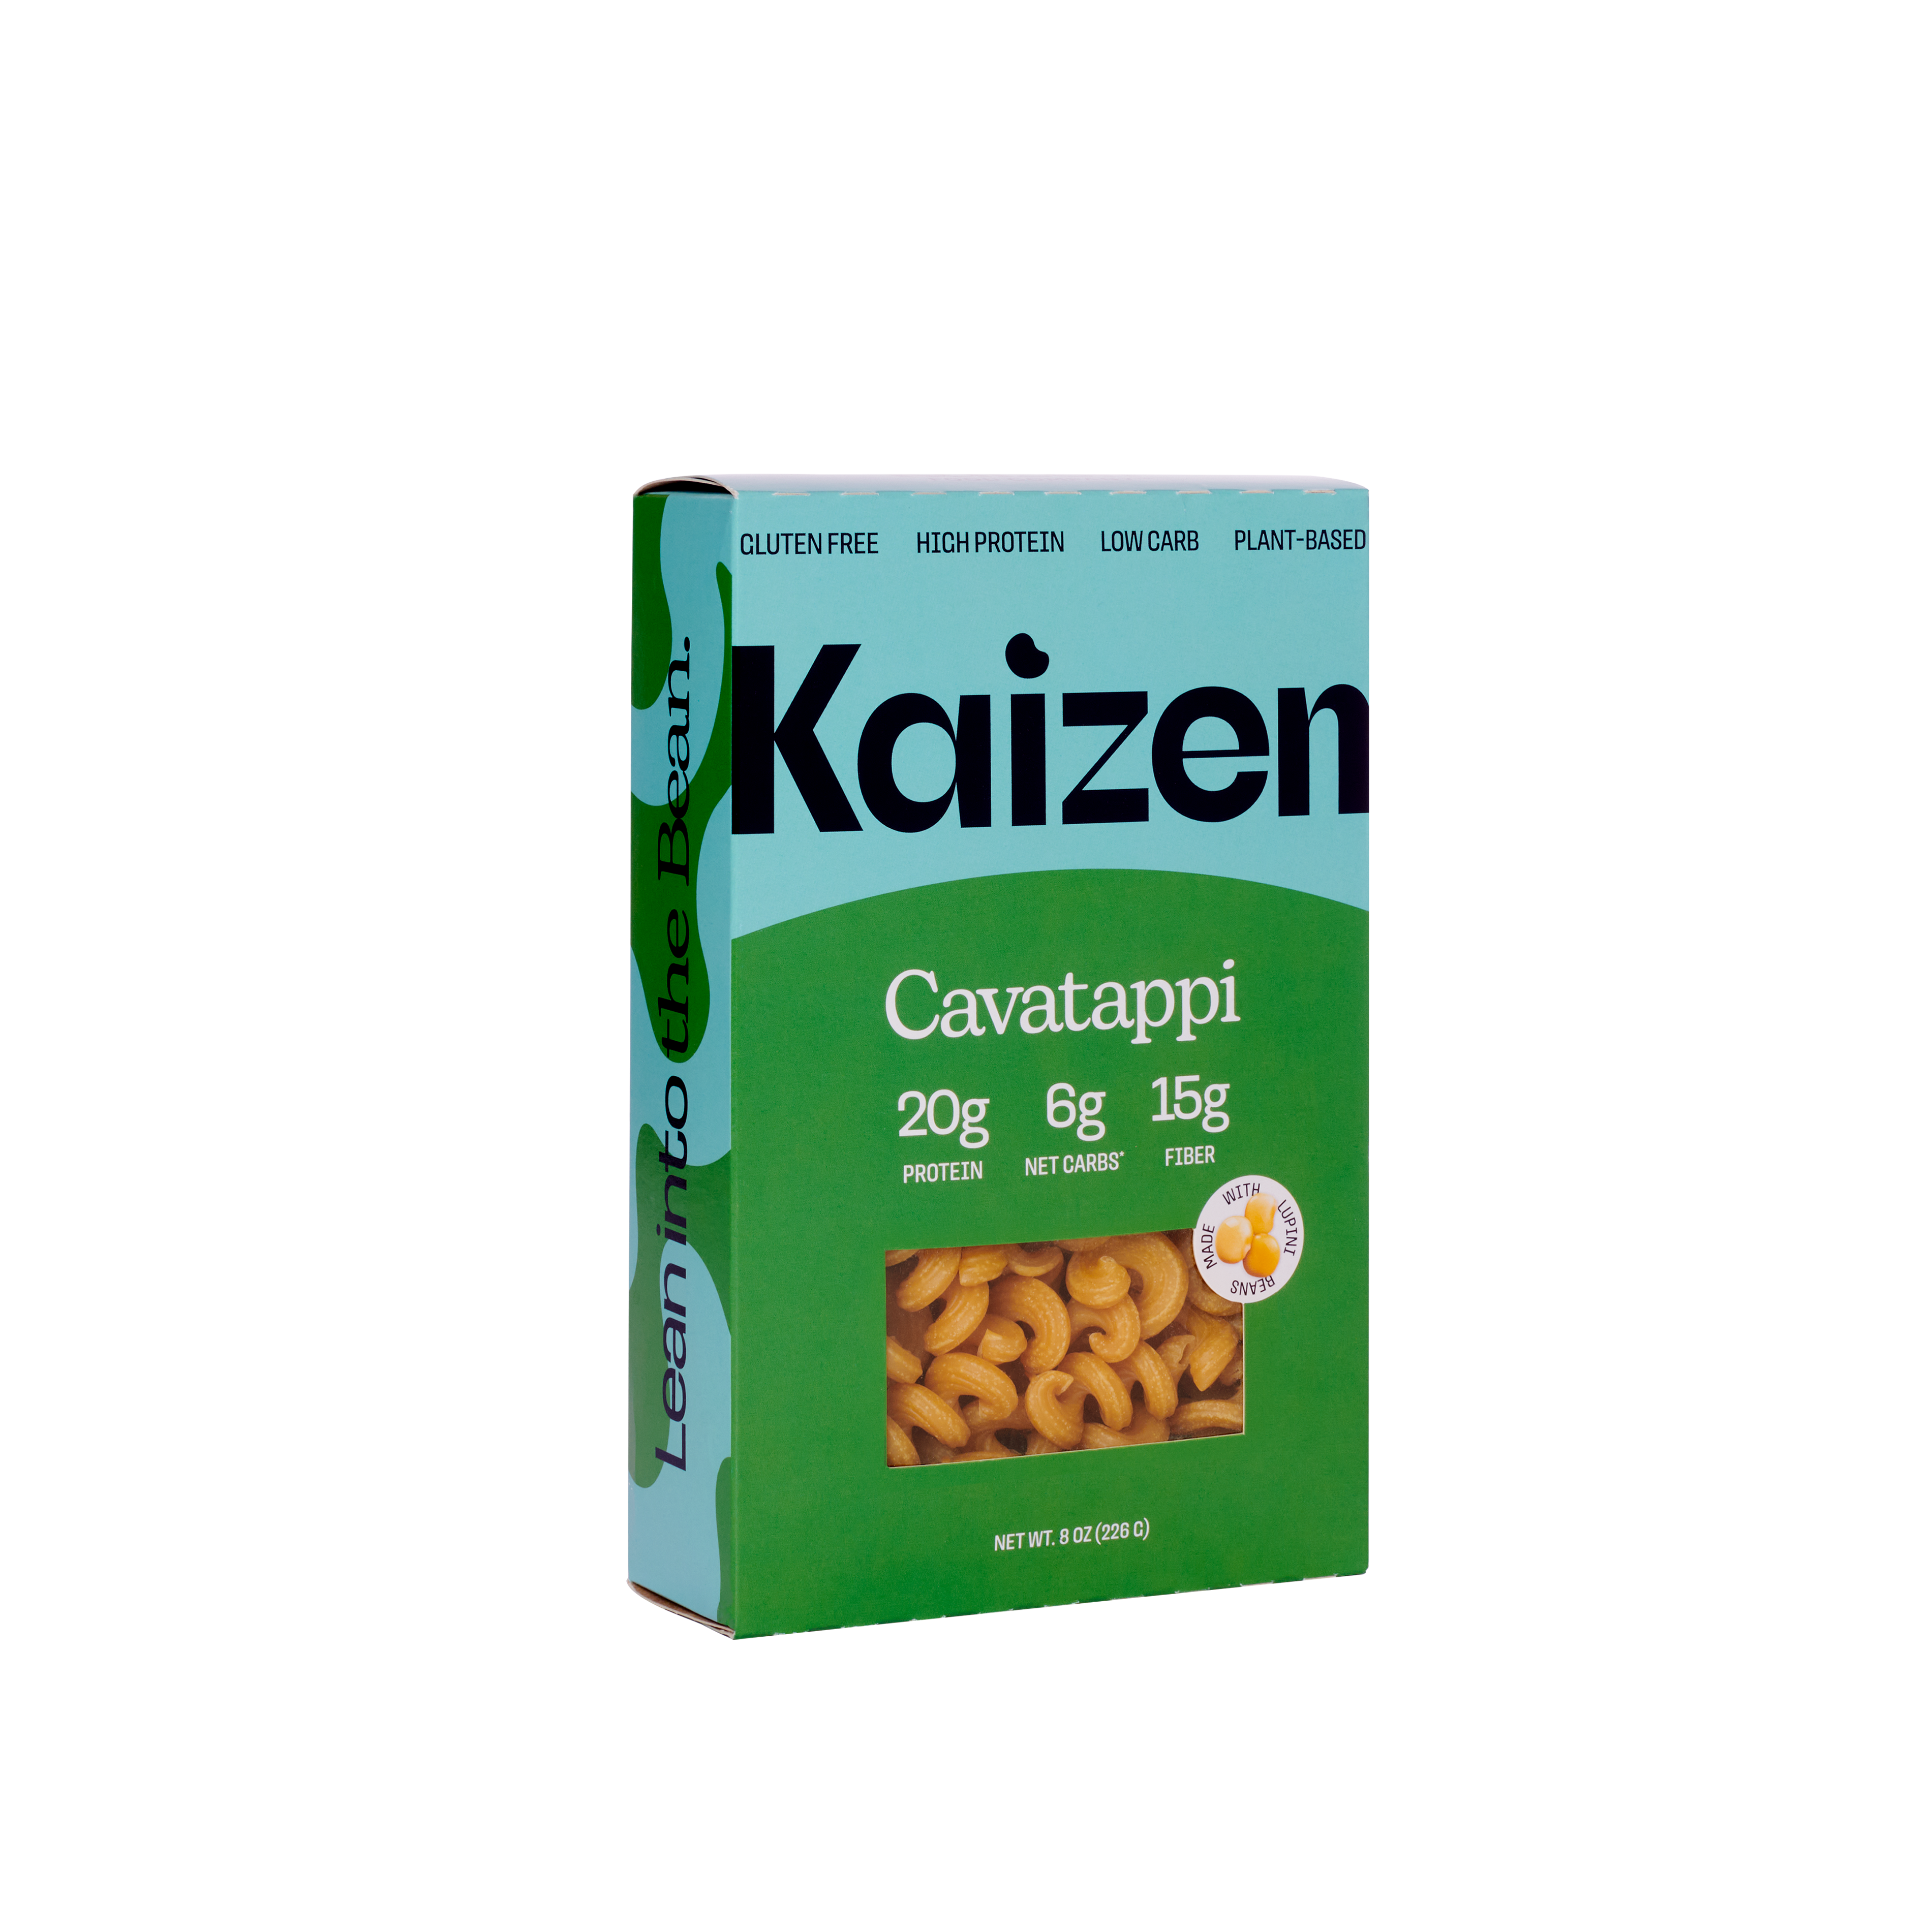 Kaizen Pasta - Cavatappi 22 units per case 8.0 oz